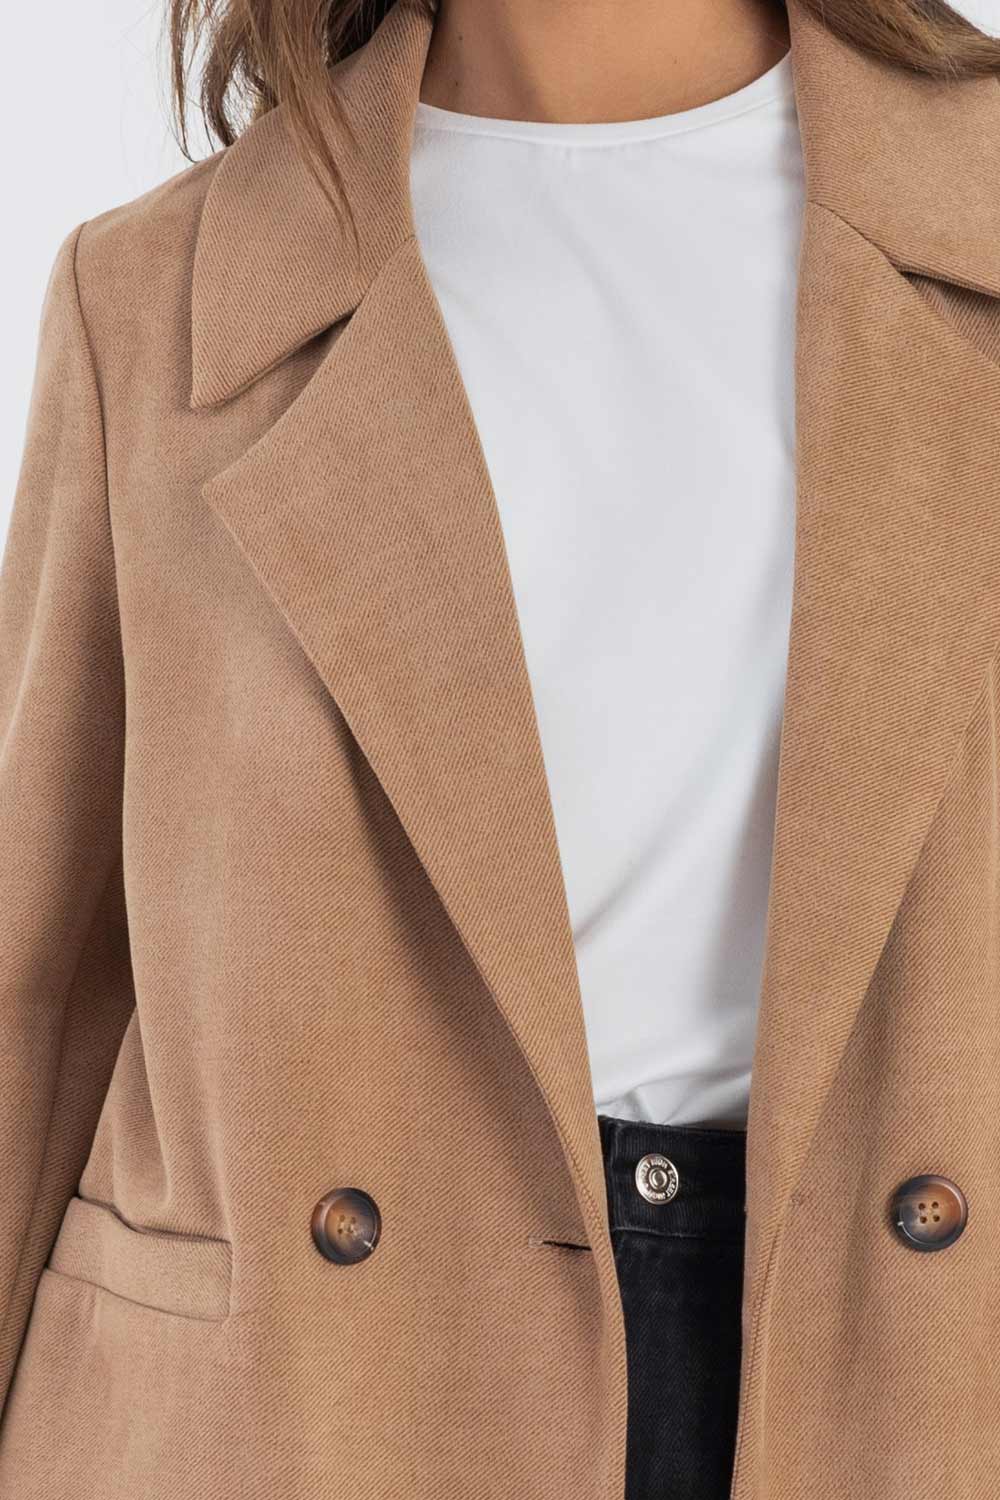 Abrigo de fit recto, manga larga, con solapa y hombreras, bolsillos delanteros con vivos y cierre frontal con doble cruce de botones en contraste.